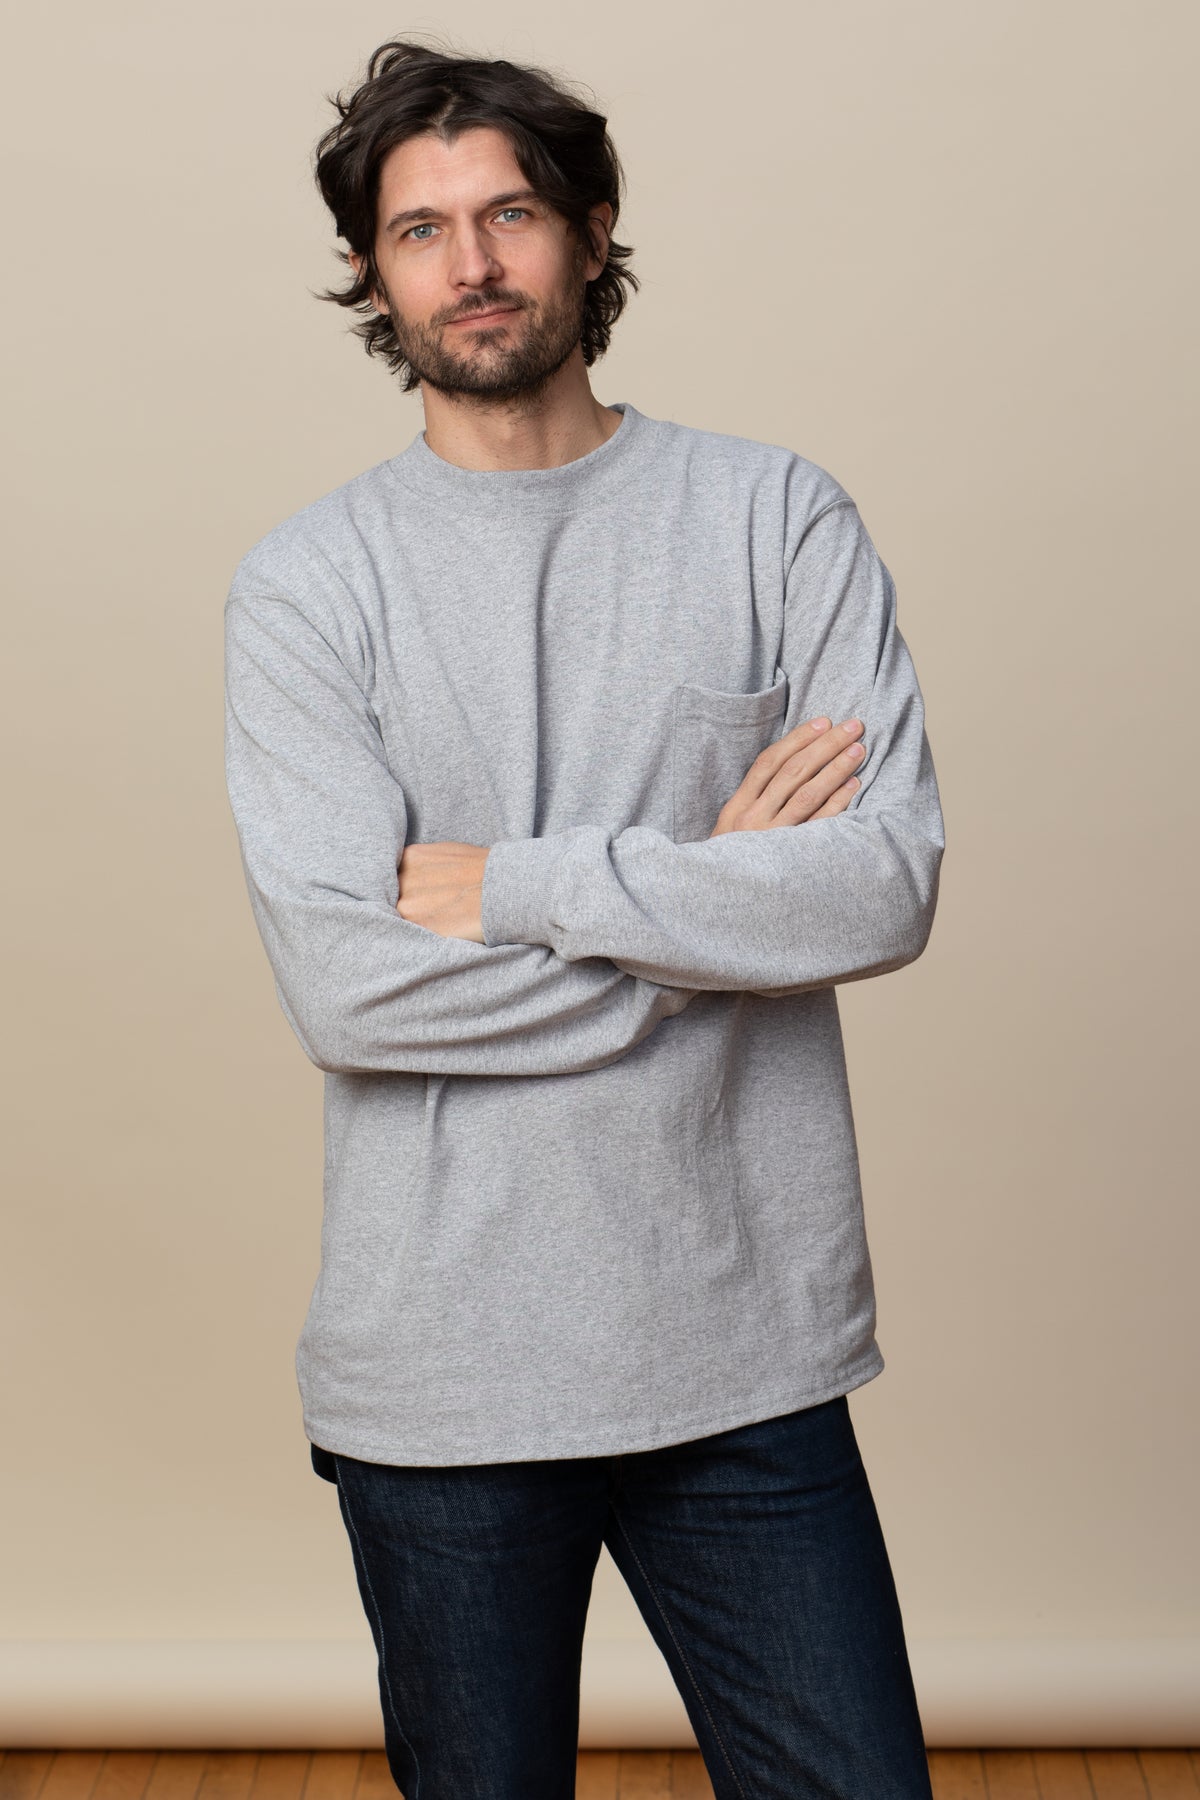 Goodwear Adult Long Sleeve Pocket Shirt Heavyweight Cotton Made In USA –  Goodwear USA